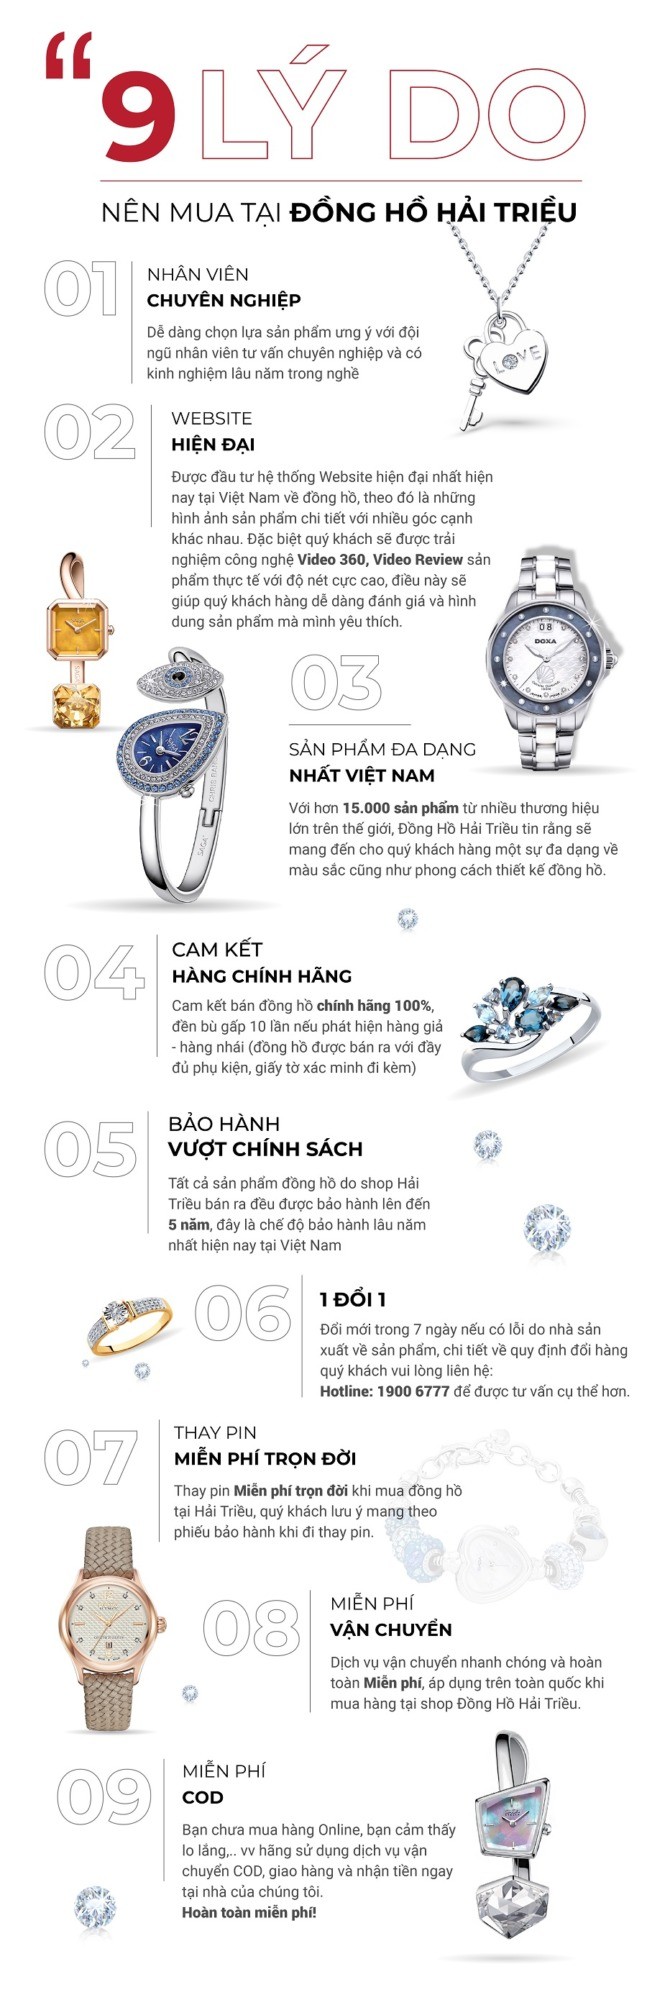 9 lý do nên mua đồng hồ Tissot tại Hải Triều